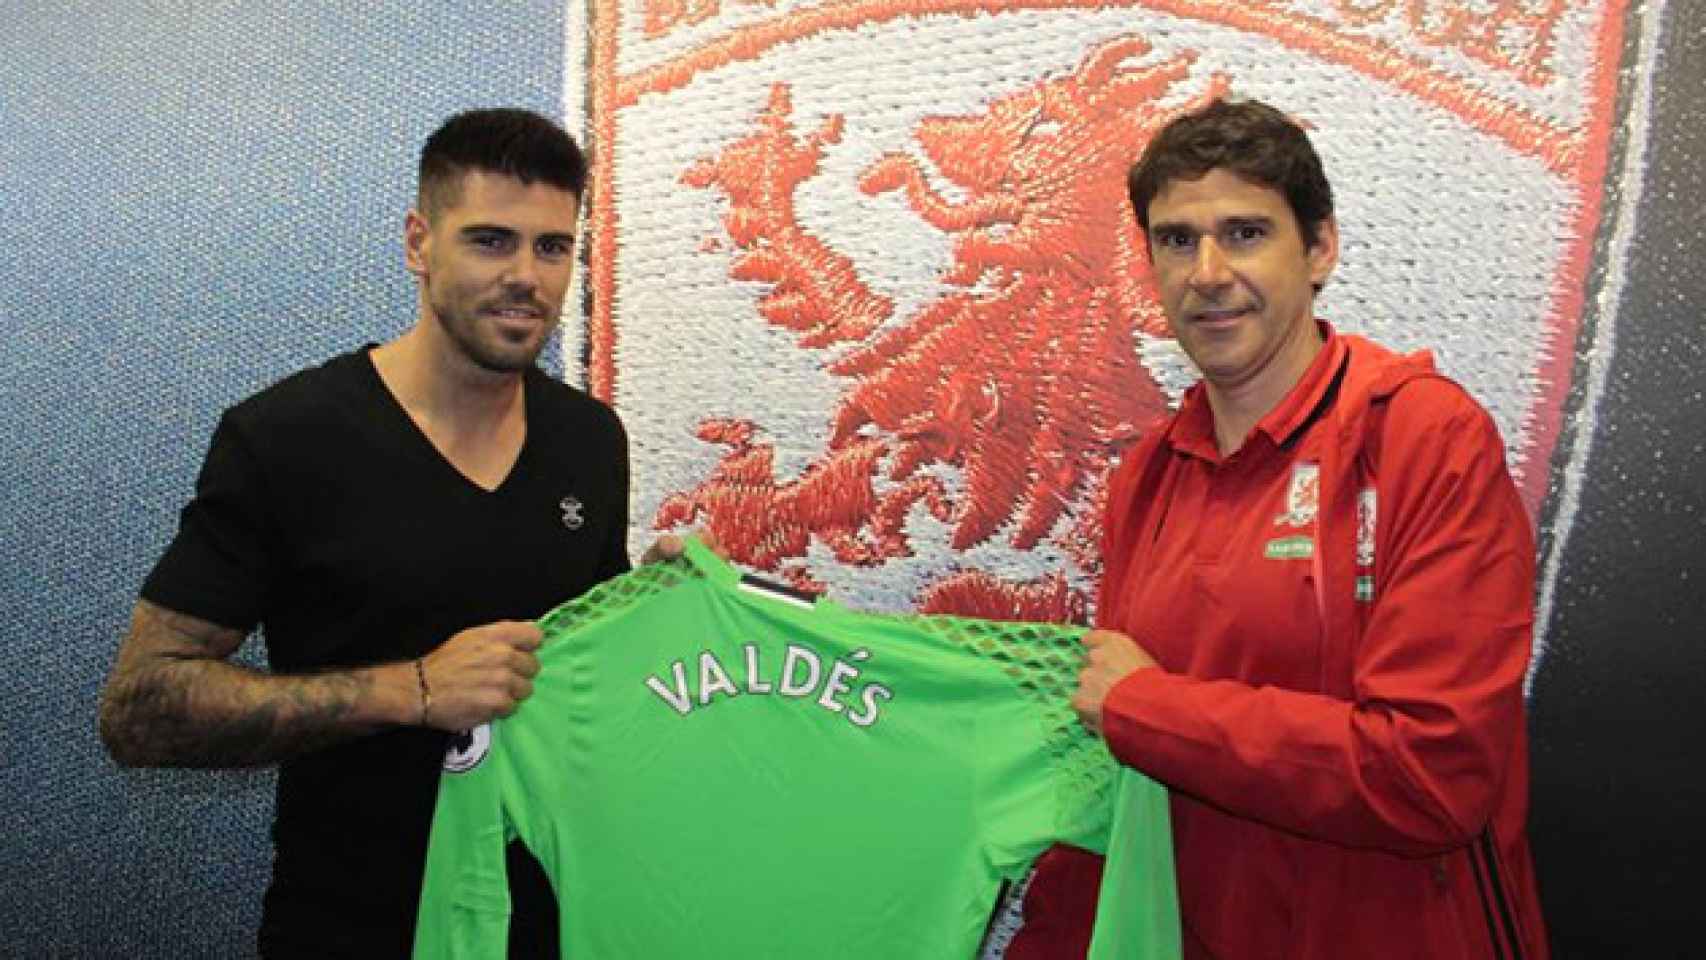 El portero Víctor Valdés y el técnico Aitor Karanka, en la presentación del futbolista con el Middlesbrough / MIDDLESBROUGH